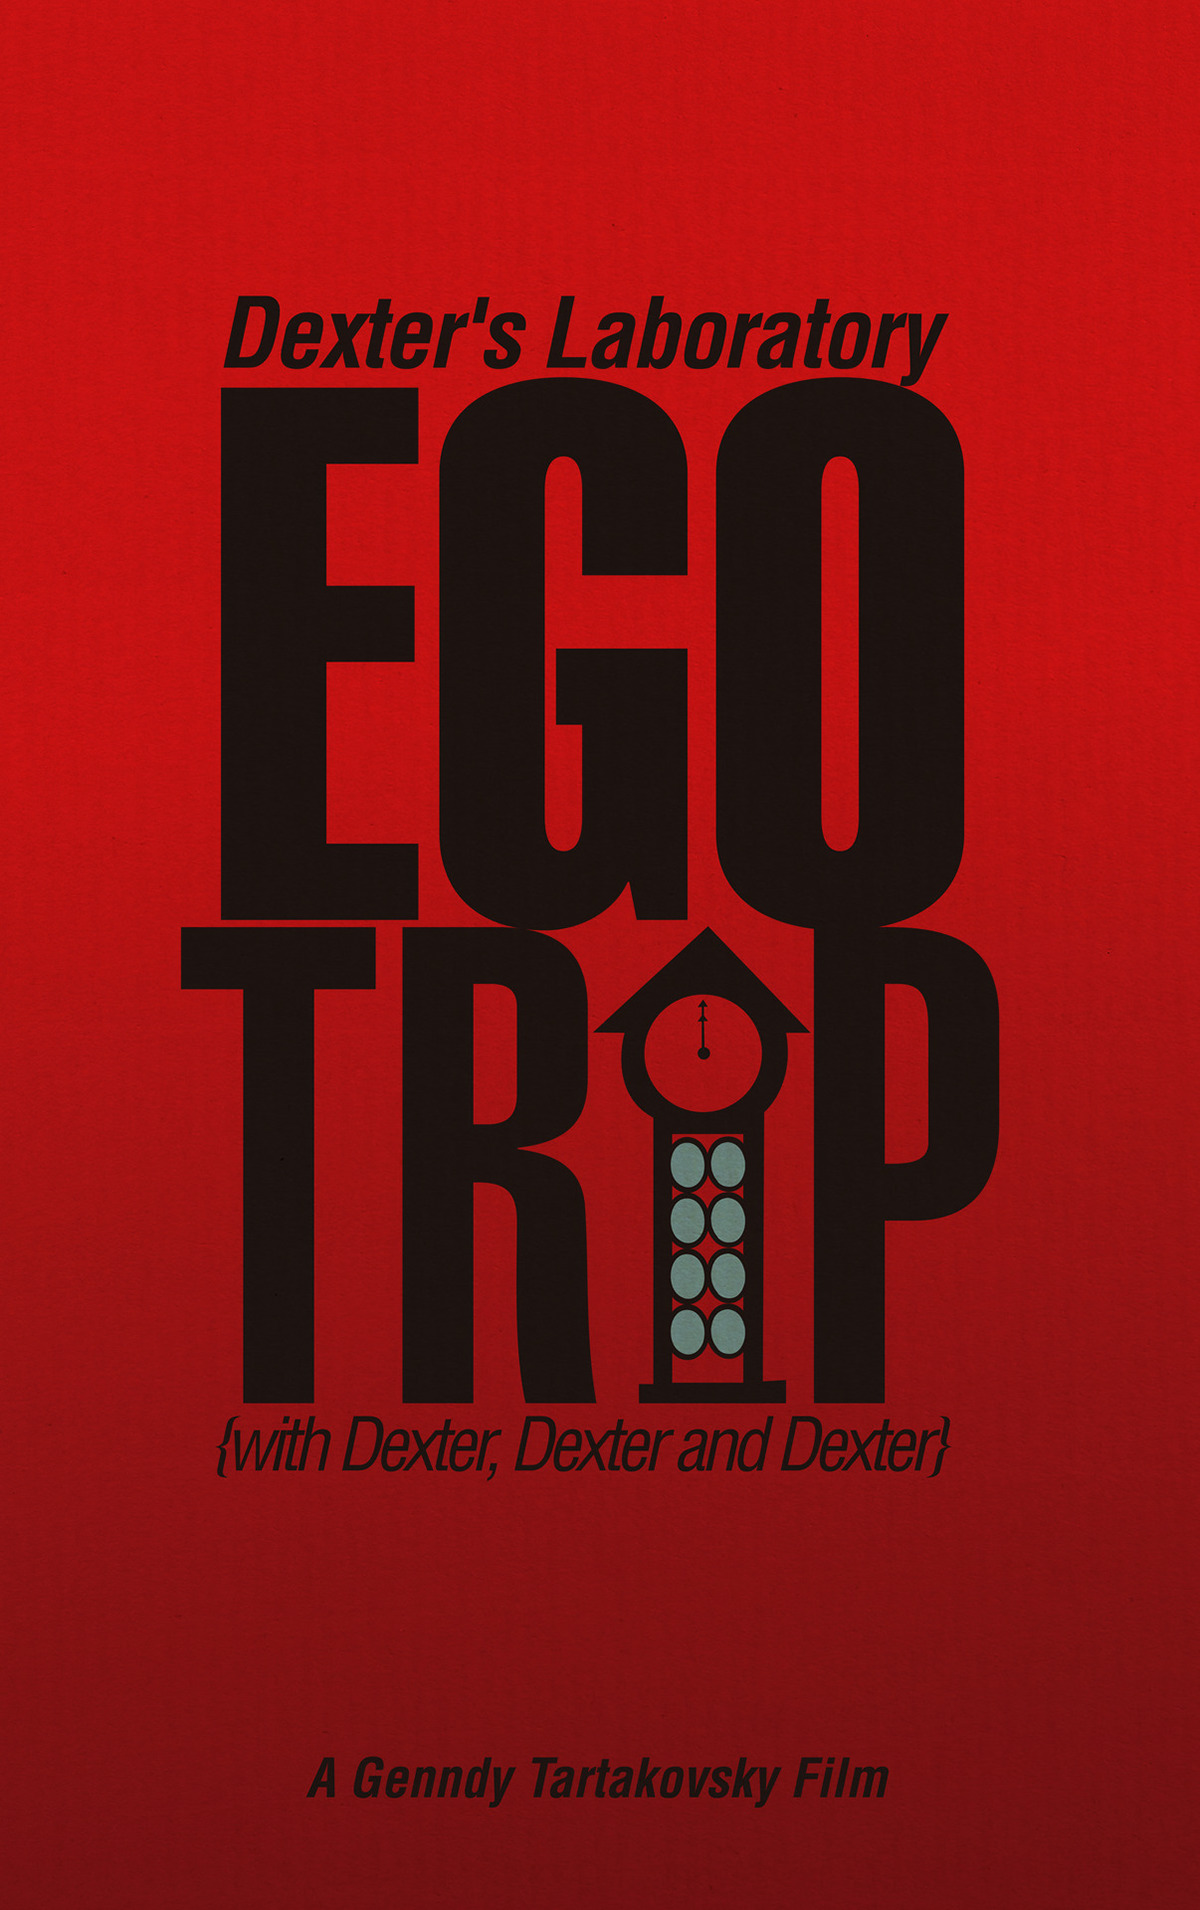 ego trip